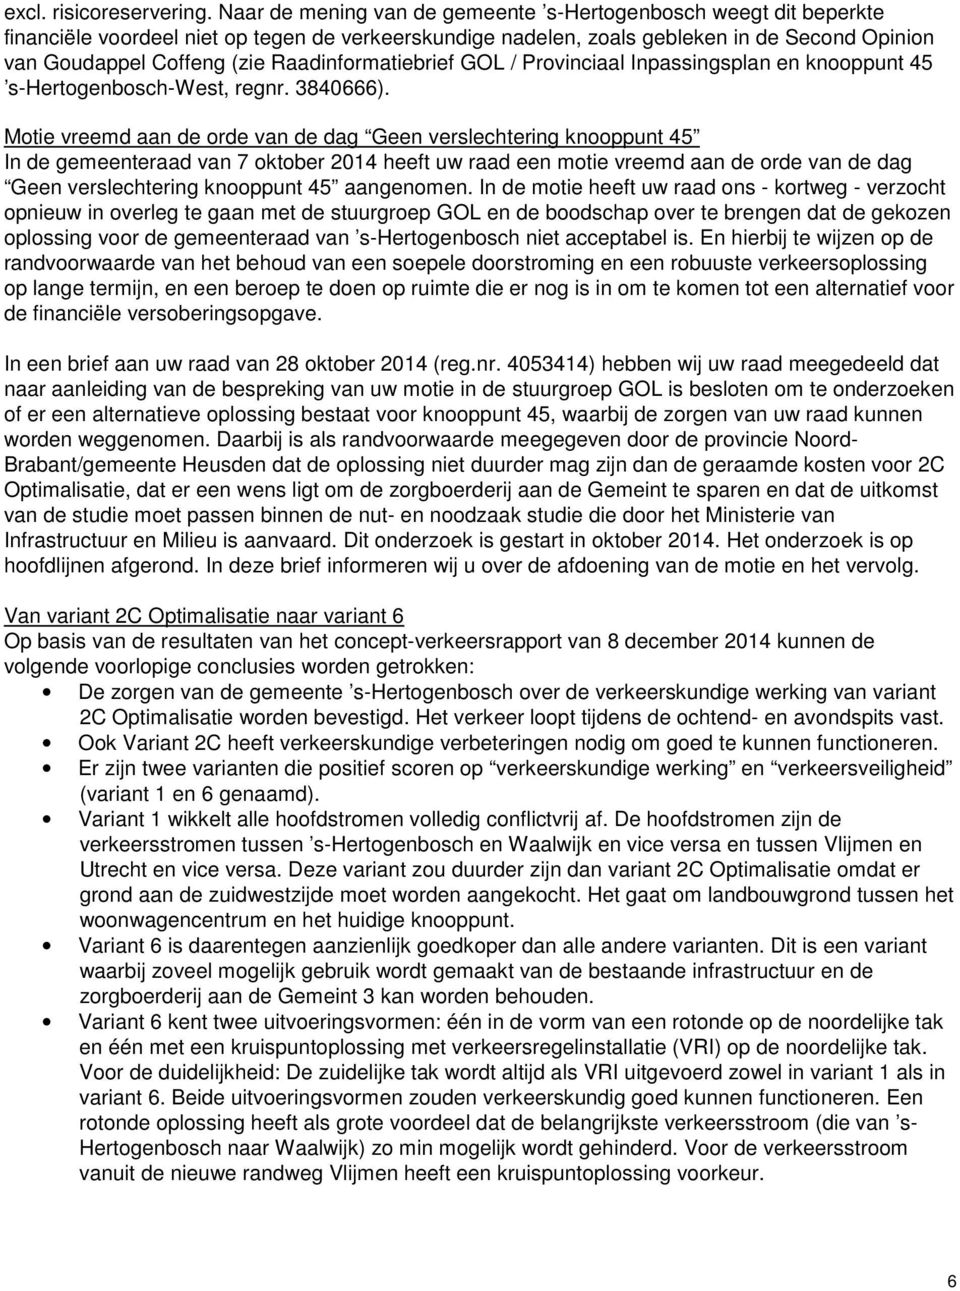 Raadinformatiebrief GOL / Provinciaal Inpassingsplan en knooppunt 45 s-hertogenbosch-west, regnr. 3840666).